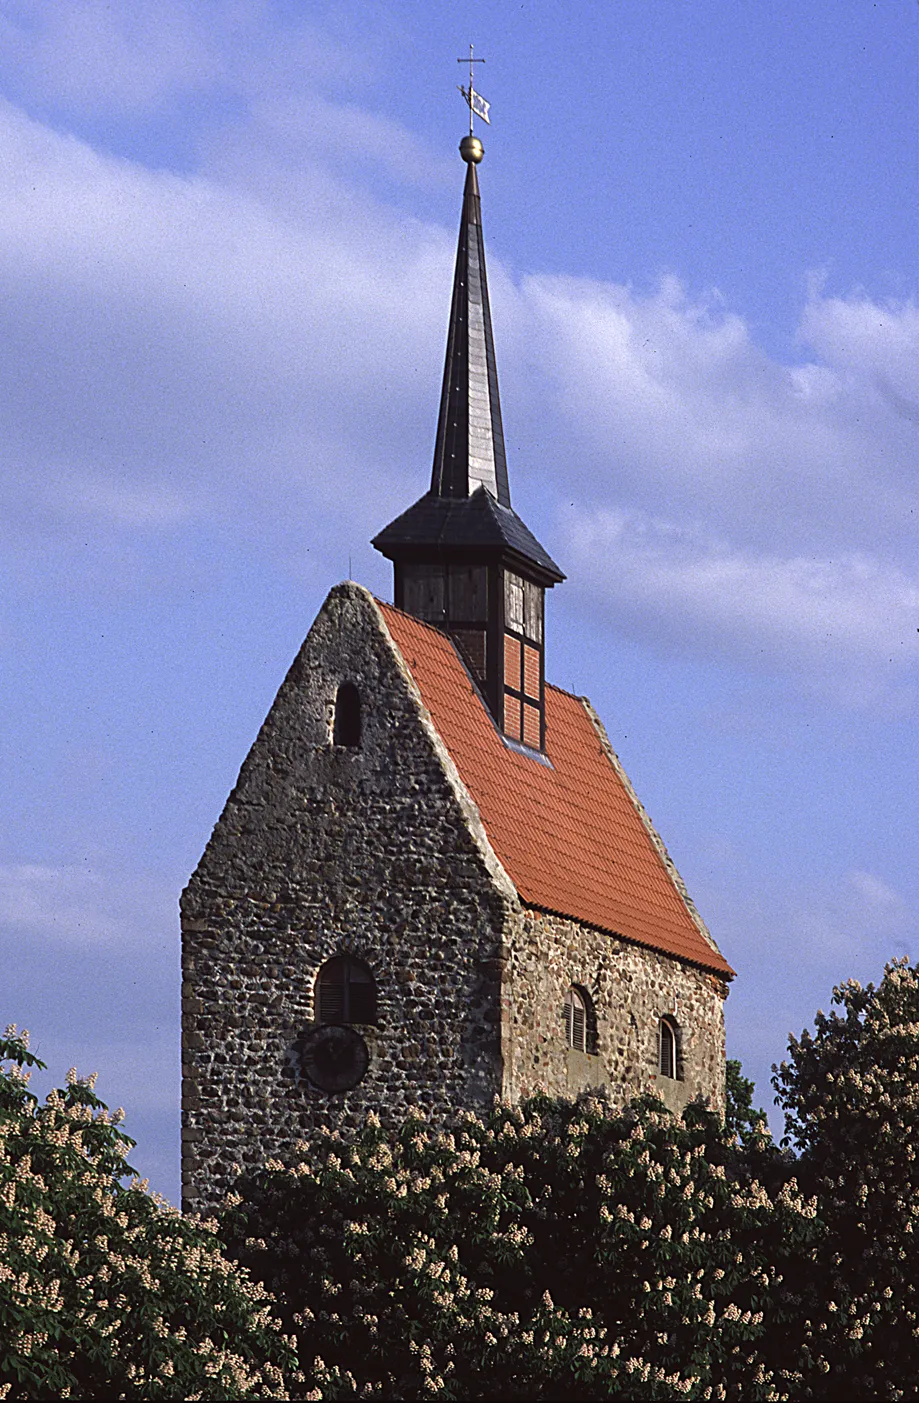 Photo showing: Beschreibung: Kirchturm von Winterfeld mit blühenden Kastanien

Quelle:eigenes Dia
Datum:02.Feb.2007
Autor:Hein_Elpers